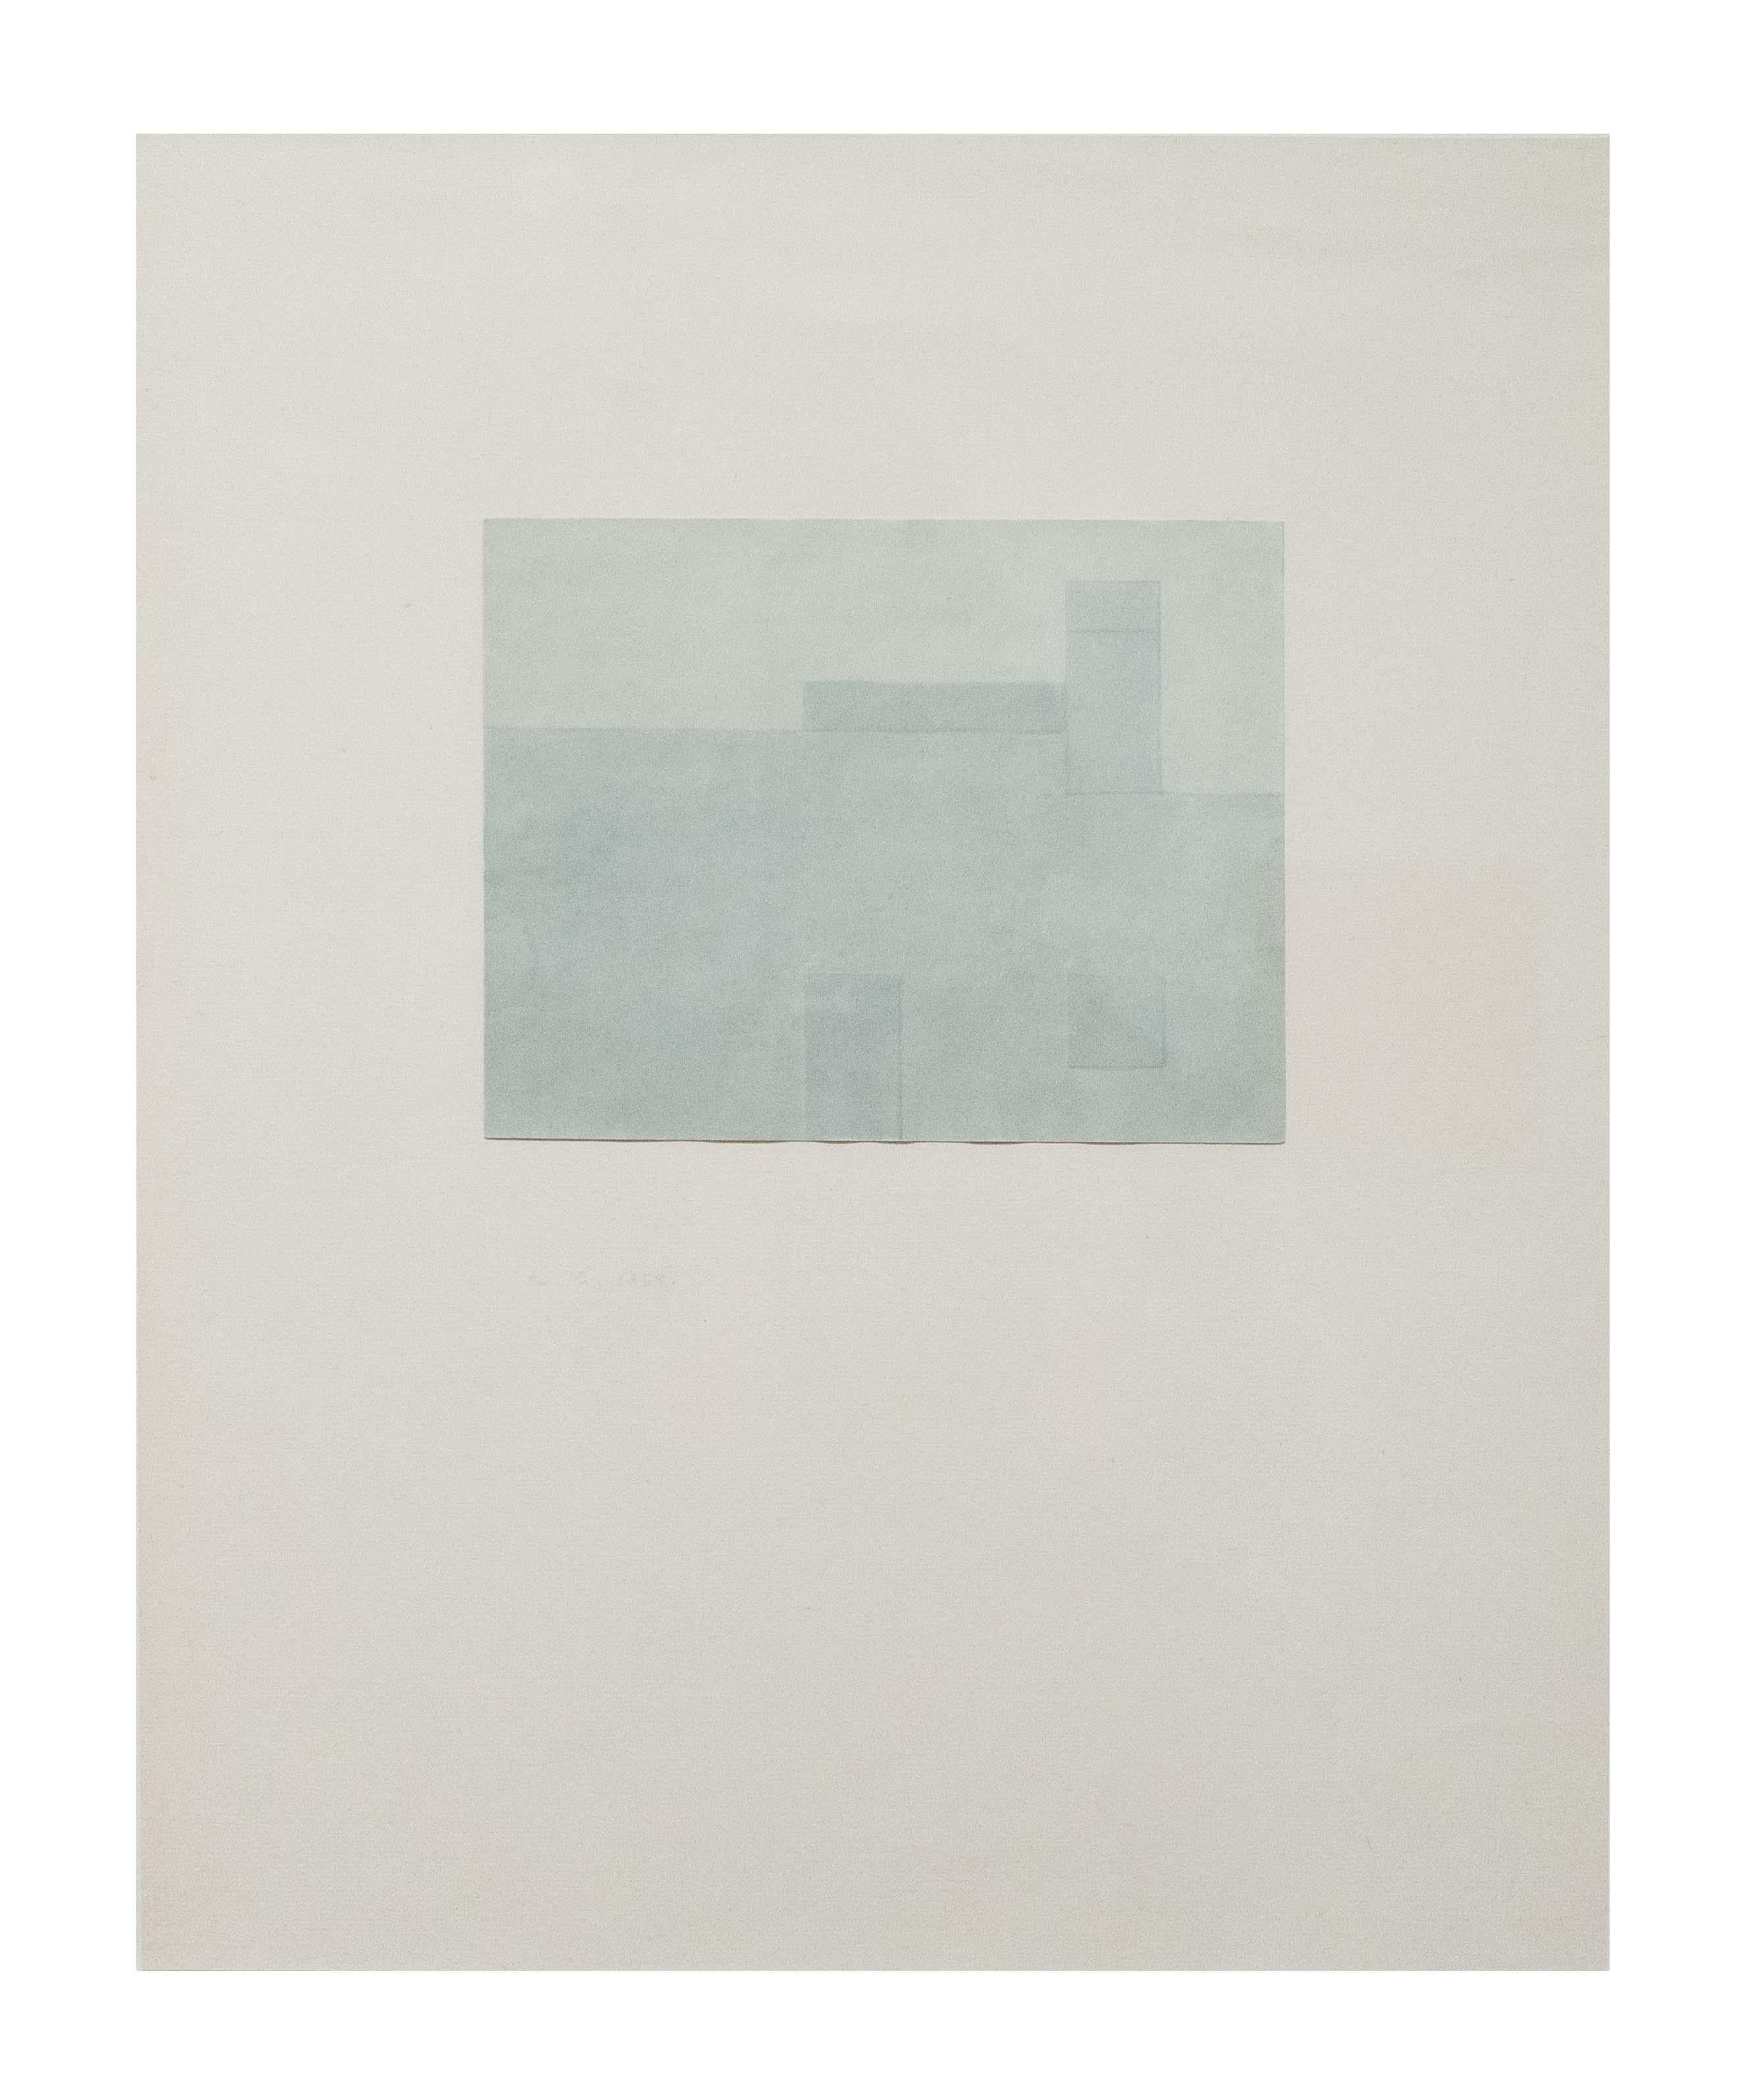 Antonio Calderara Abstract Drawing - Senza Titolo, astrazione, arte italiana, minimalismo, paesaggio, 1959